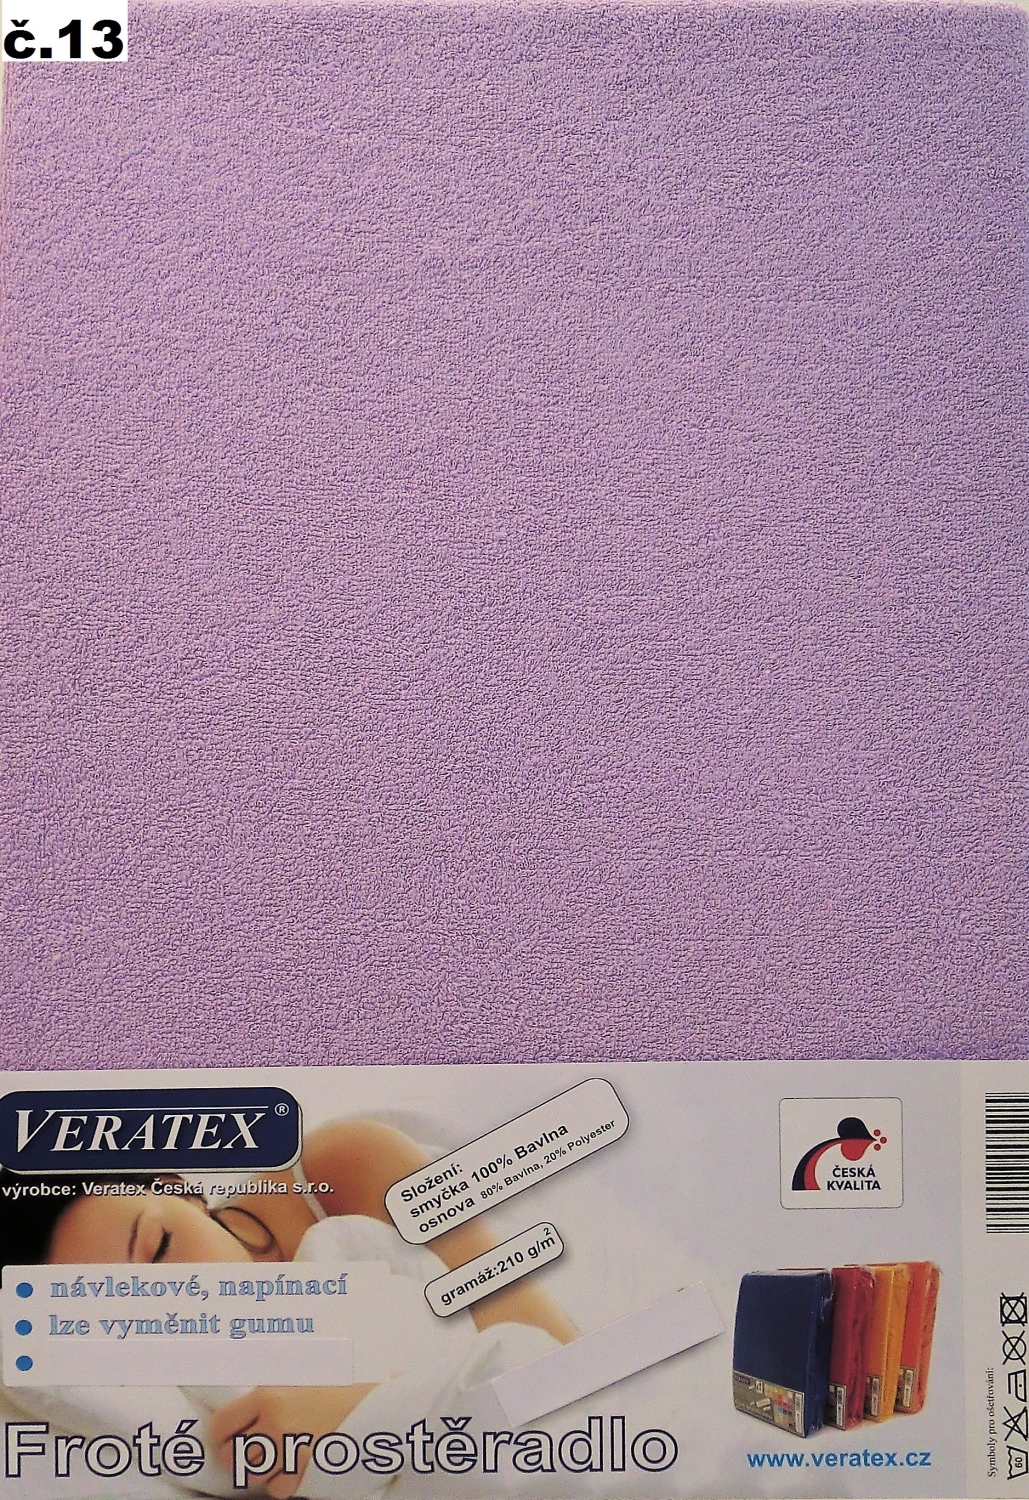 Veratex Froté prostěradlo jednolůžko 80x200/25cm (č.13-fialkové)